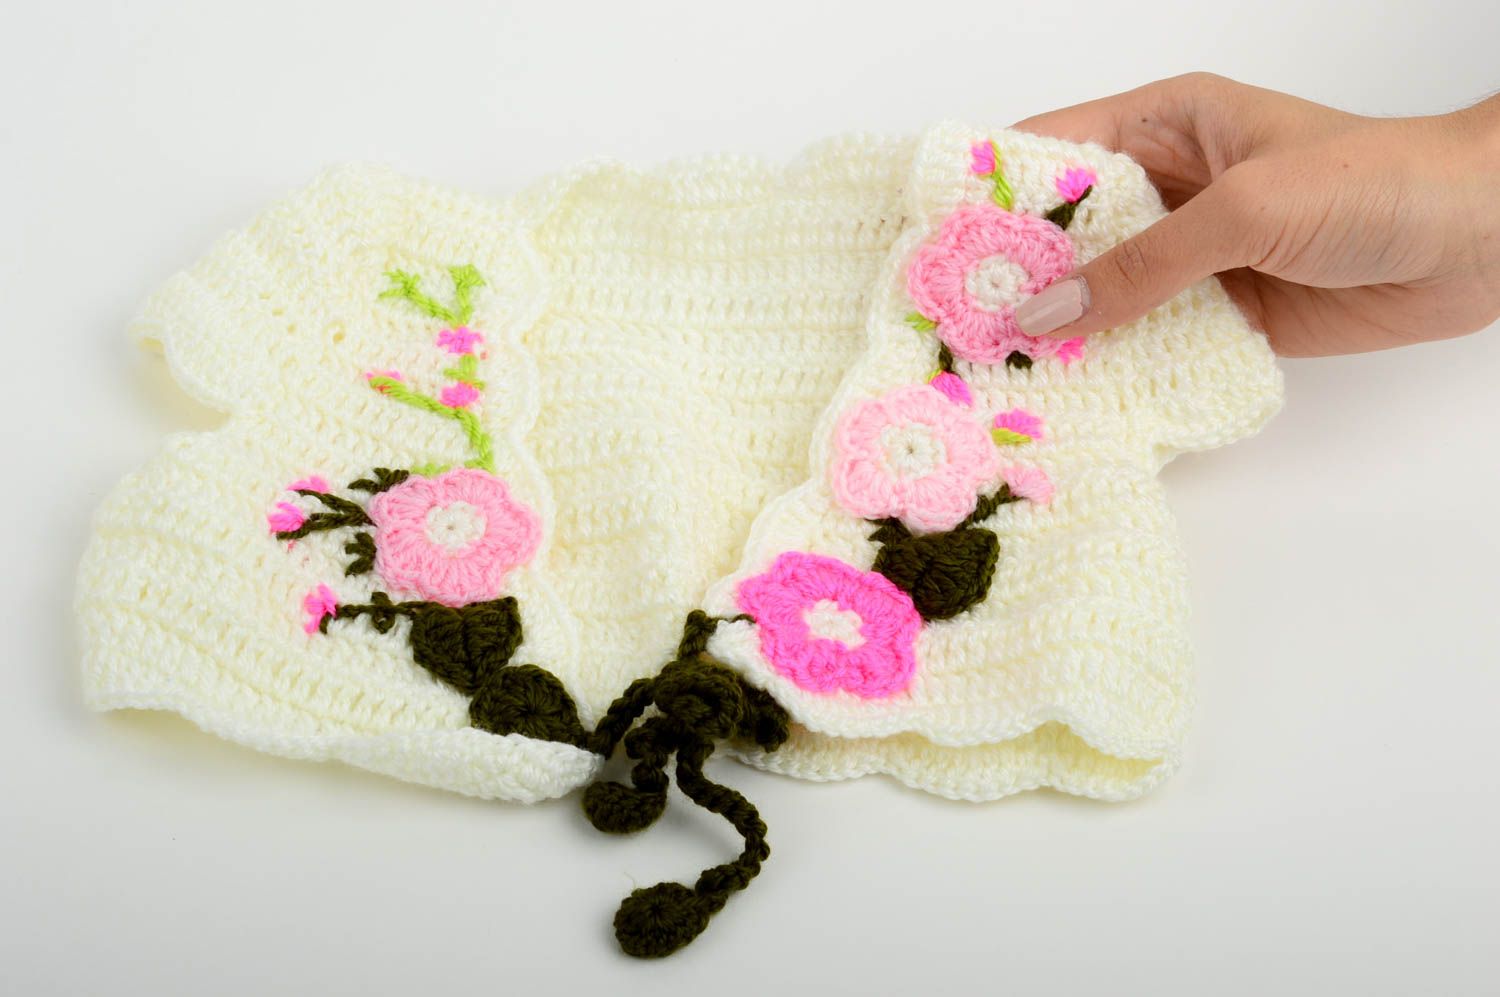 Handmade crochet vest goods for children kids clothing sleeveless top for girl photo 2